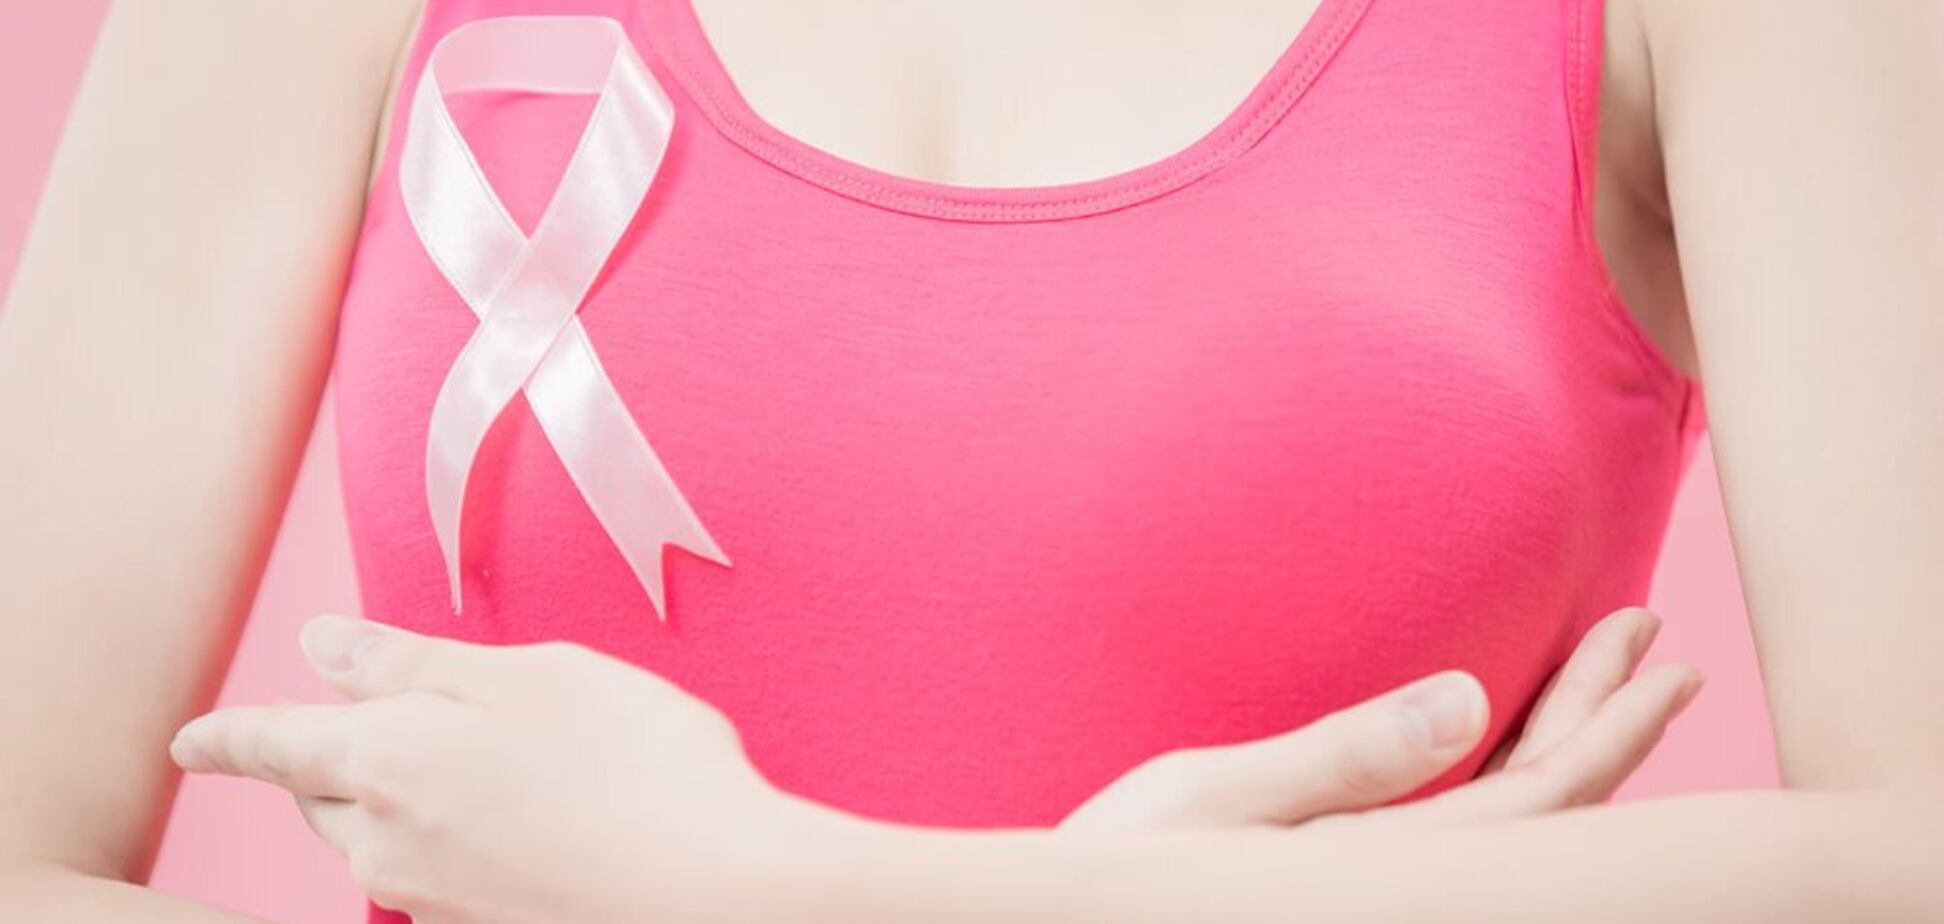 Борьба с беременностью и бокс: онколог рассказал о причинах рака груди